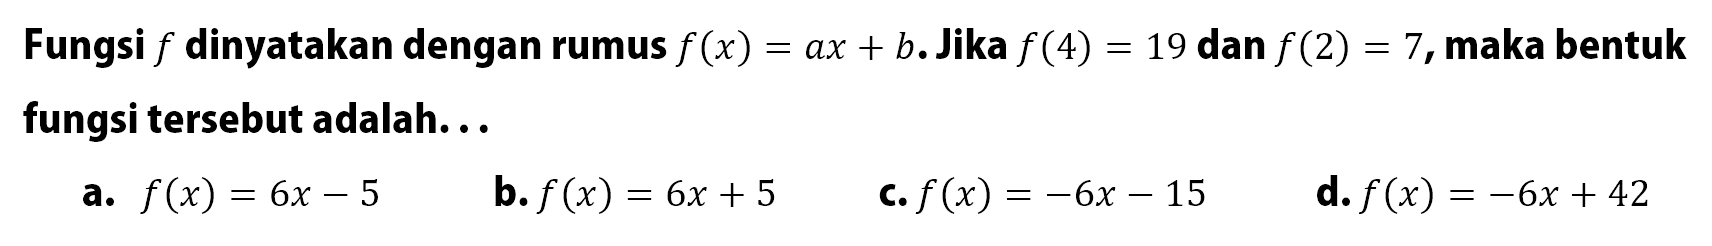 Fungsi f dinyatakan dengan rumus f(x)=ax+b. Jika f(4)=19 dan f(2)=7,maka bentuk fungsi tersebut adalah...